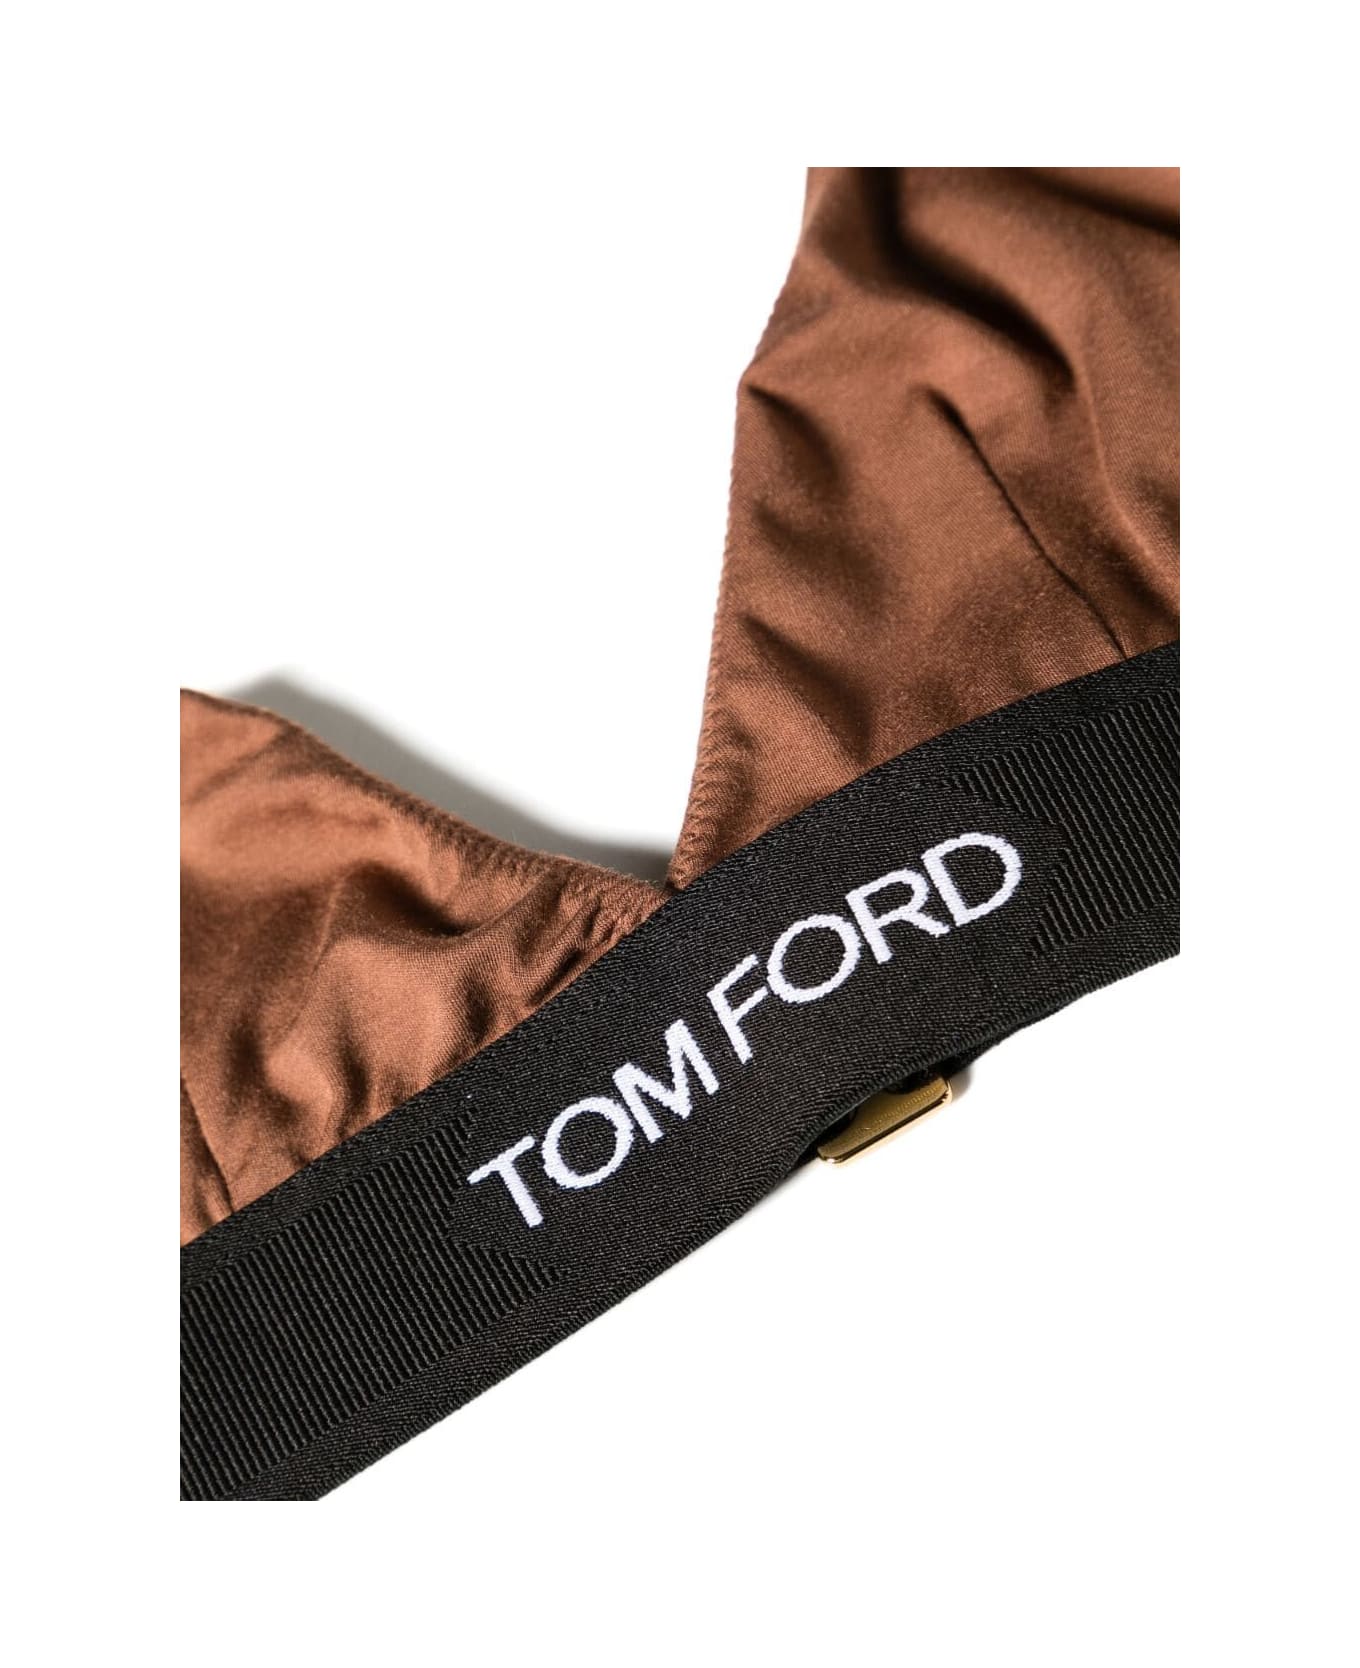 Tom Ford Modal Signature Bra - Cocoa Brown